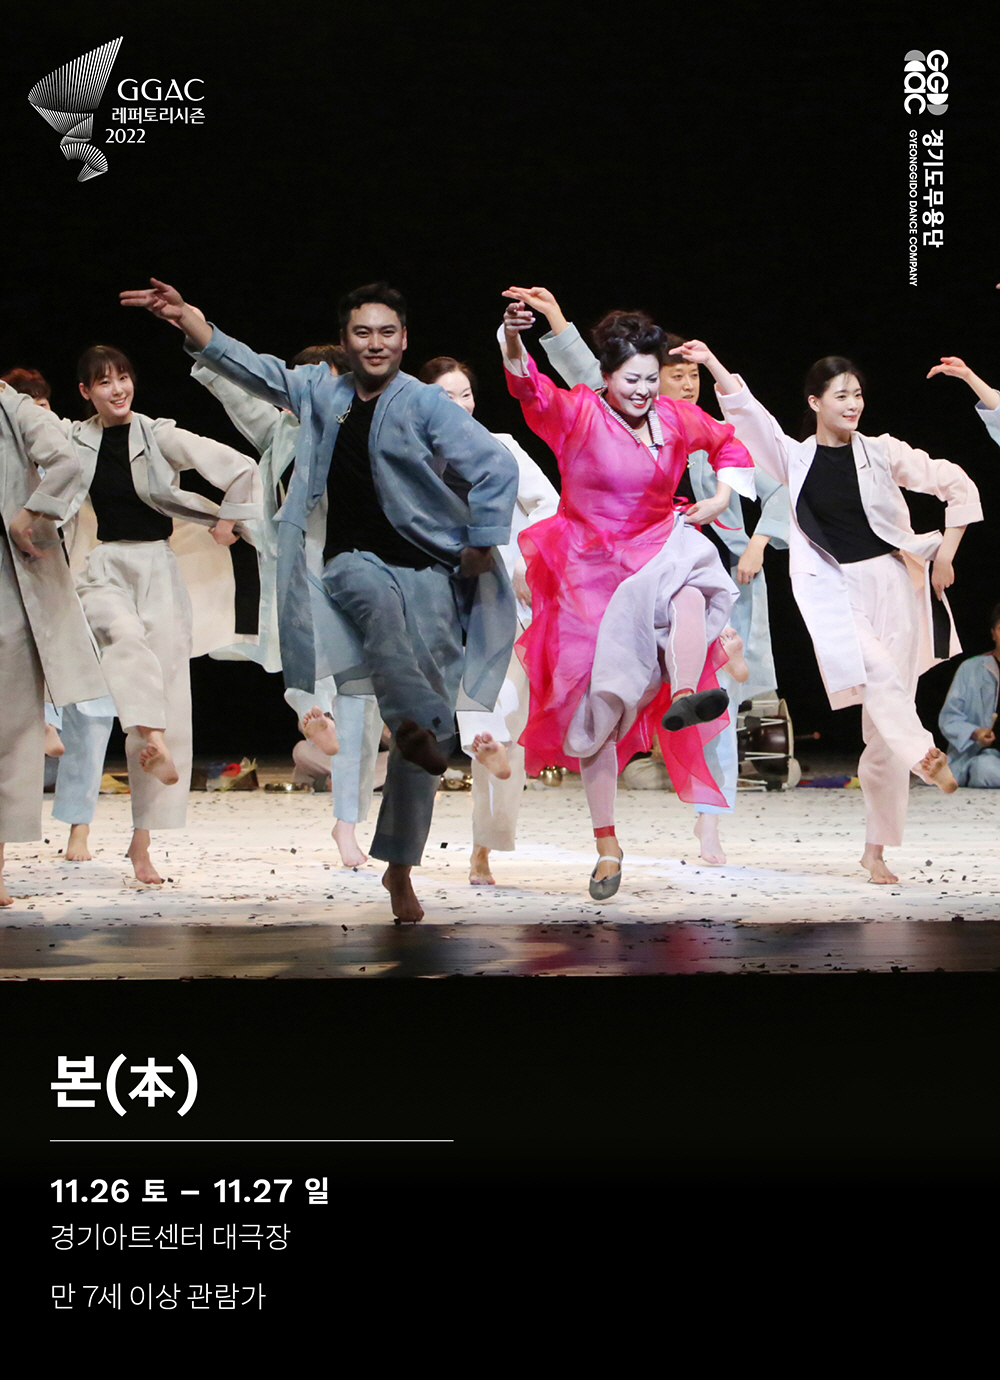 경기도무용단(예술감독 김상덕)의 <본(本)>은 한국 전통춤의 깊은 호흡과 우리 정서를 바탕으로, 춤이 무대 안에서만 머무는 것이 아닌 관객들의 삶 가운데로 스며들 수 있기를 바라는 간절한 마음을 담았다.